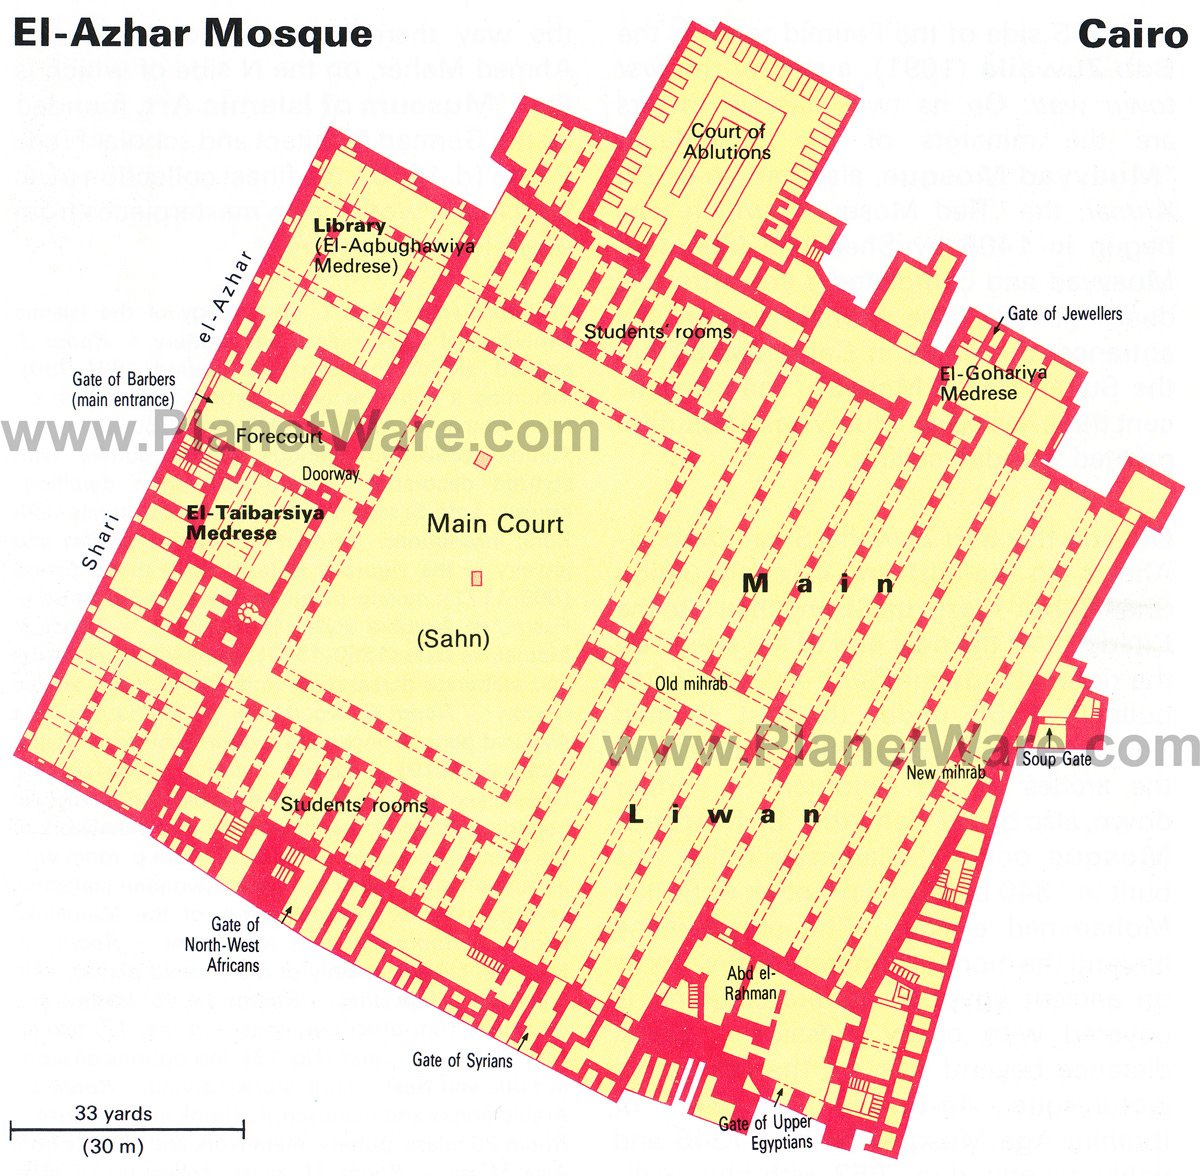 El-Azhar Mosque - Floor plan map